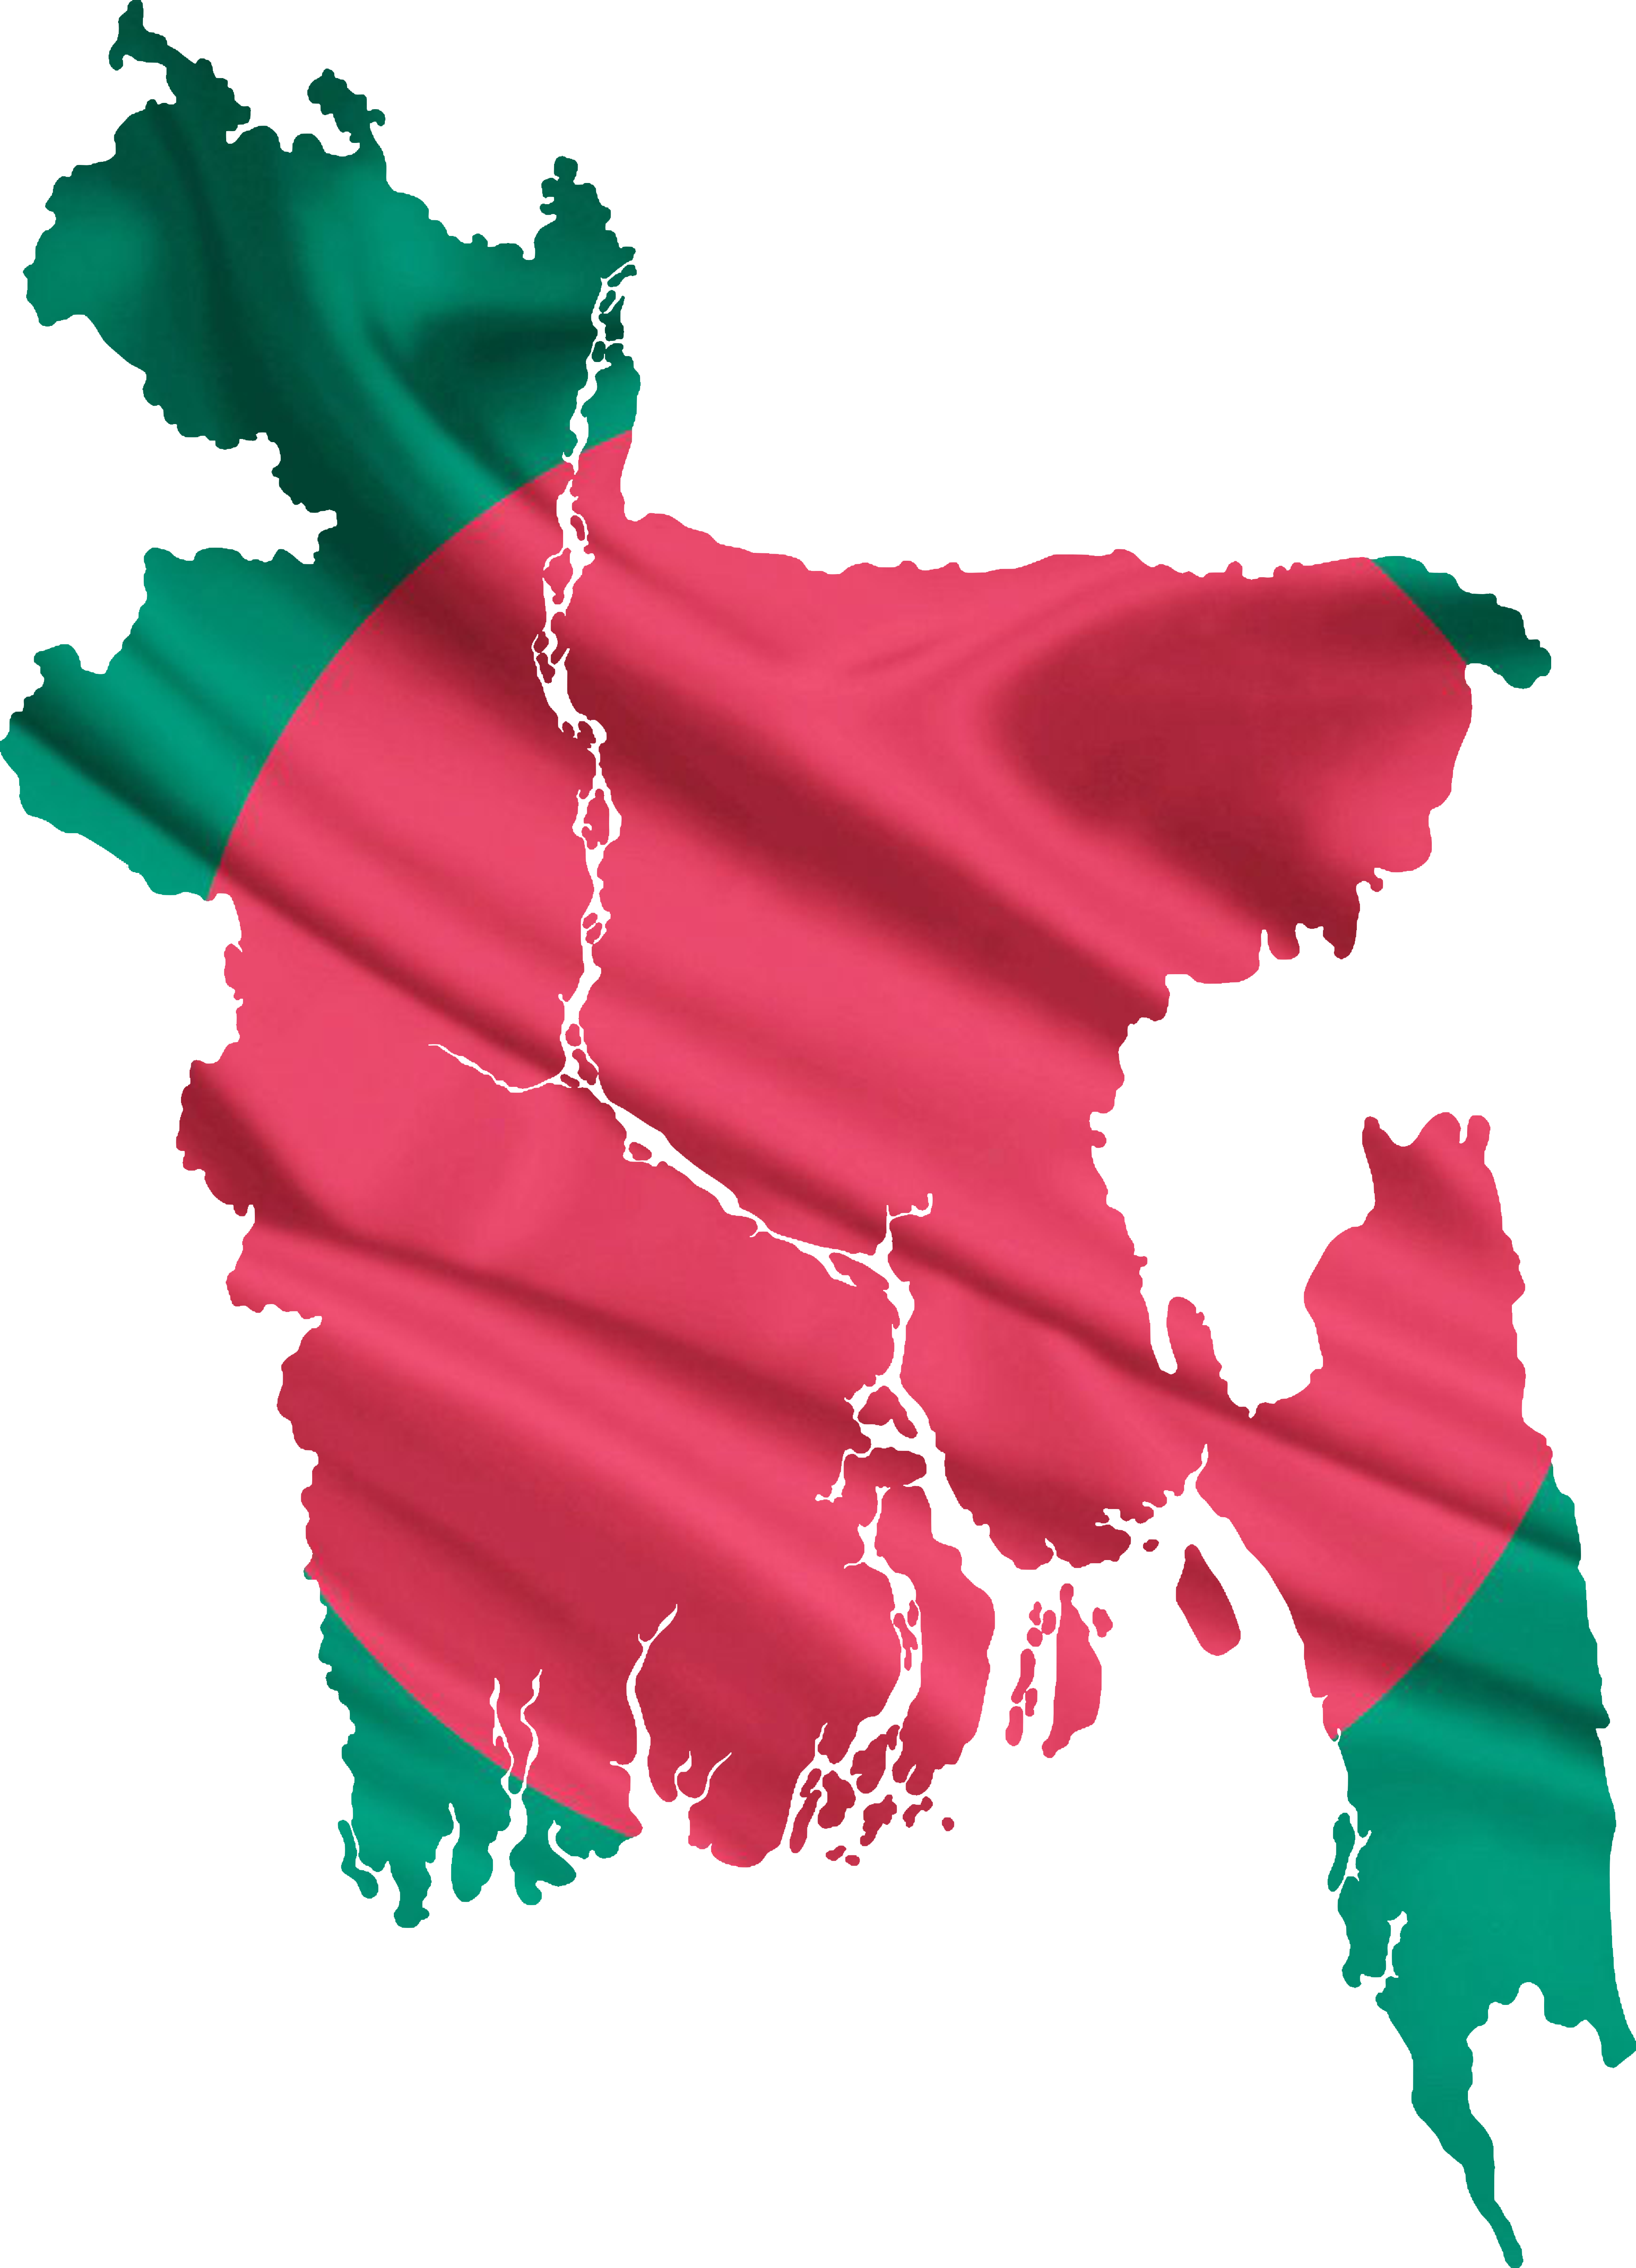 Bangladesh flag&map